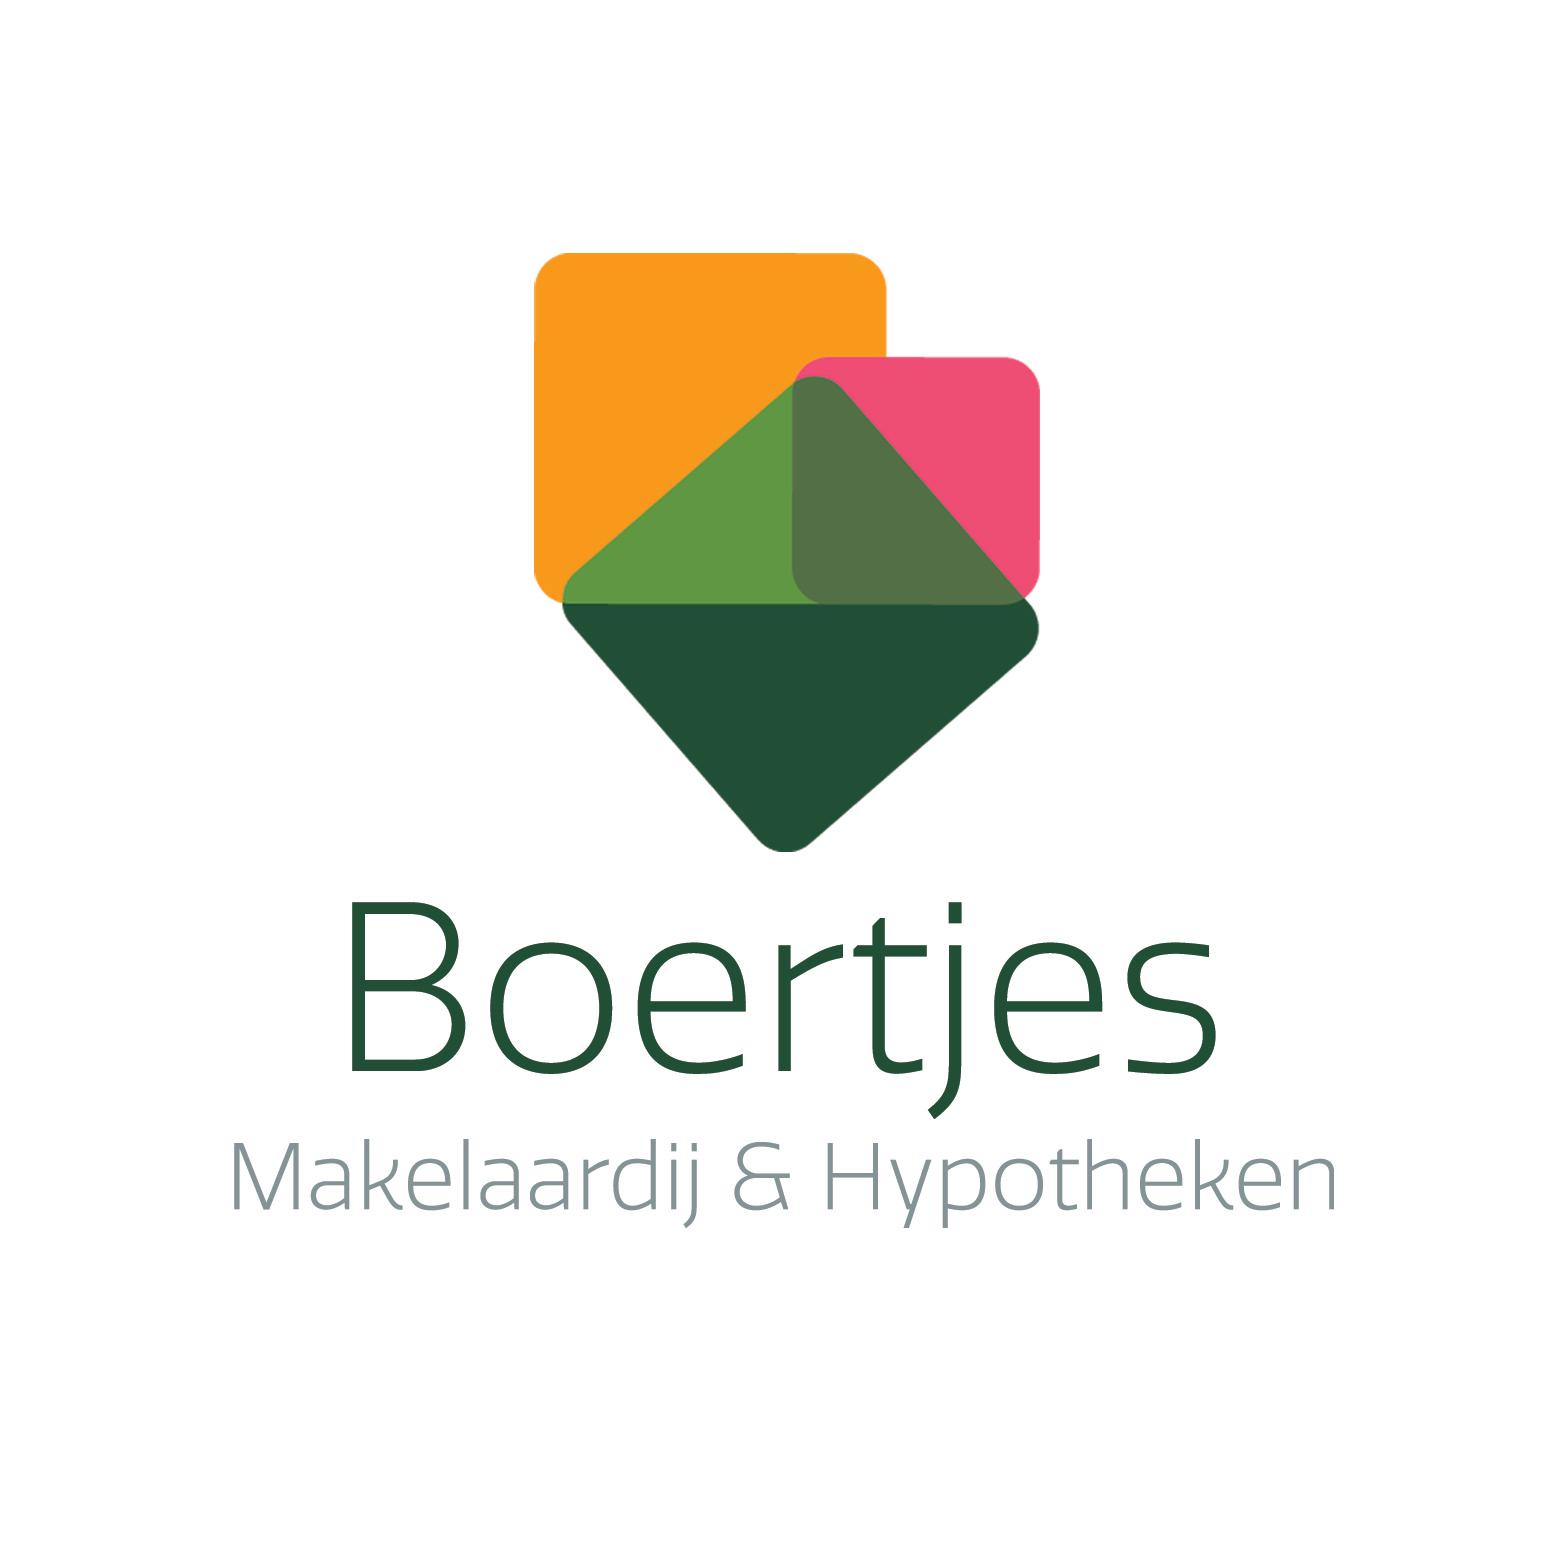 Boertjes Makelaardij & Hypotheken Logo